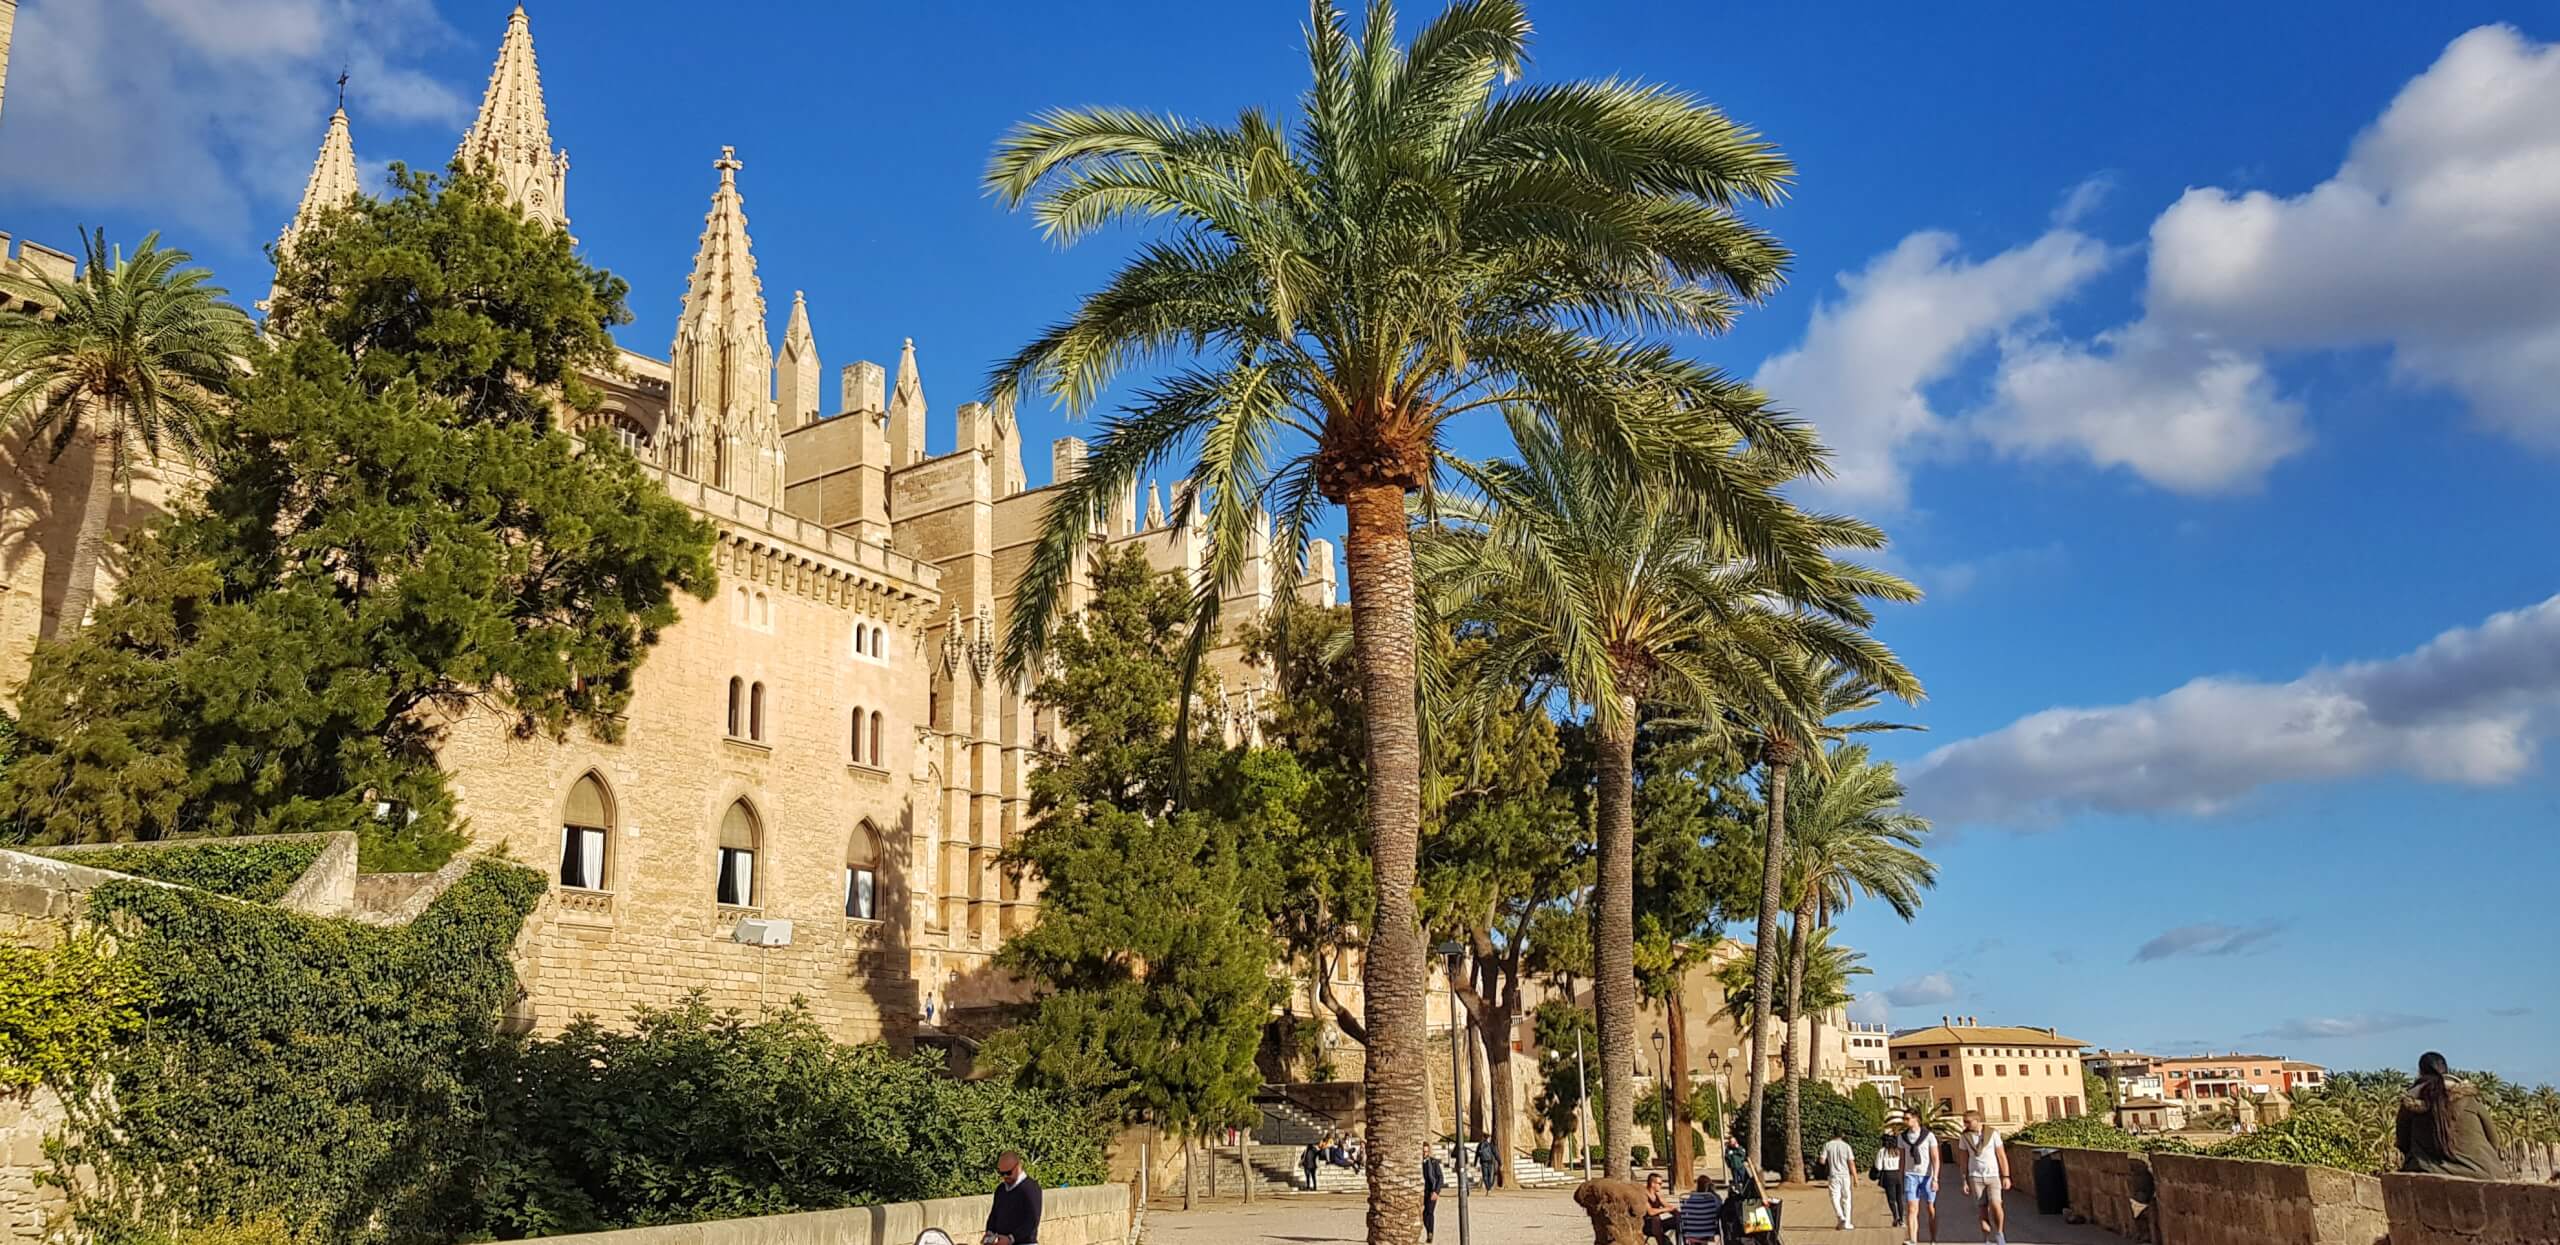 Katedralen bak palmetrær, Palma de Mallorca